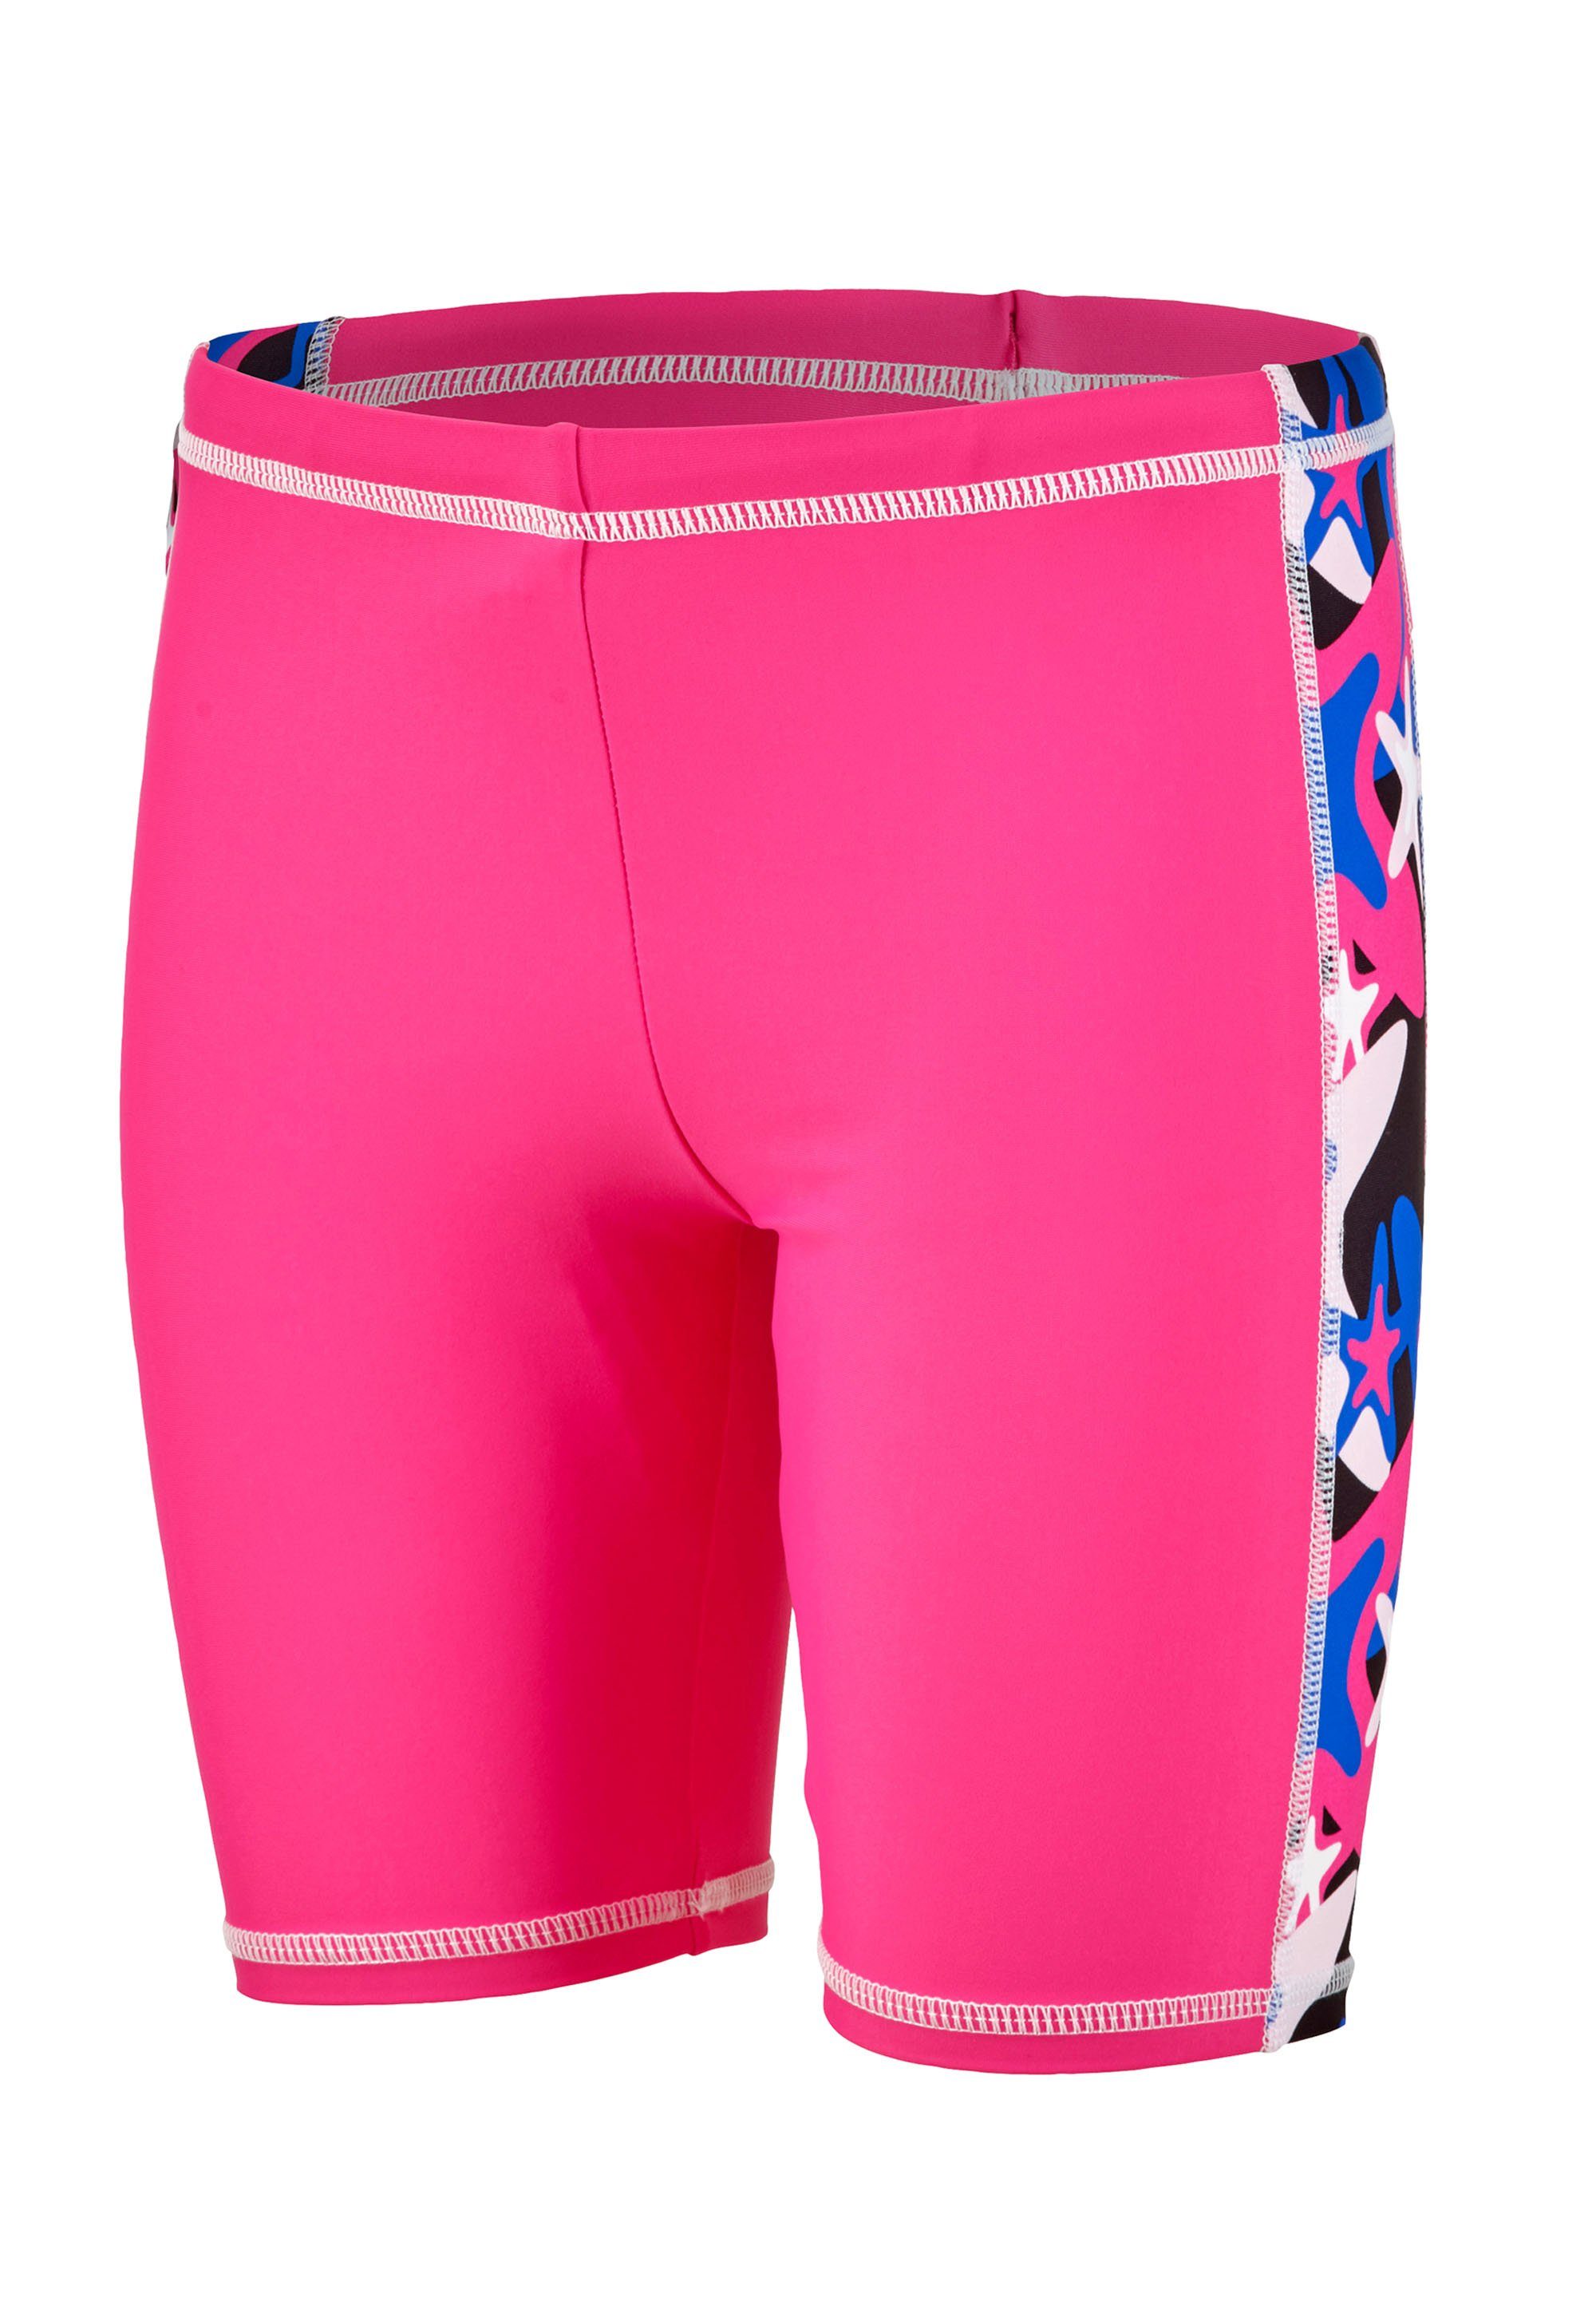 BECO-SEALIFE® Badeanzug Beco mit pink Schutzanzug (2-St) UV50+ Sonnenschutz Beermann sicherem